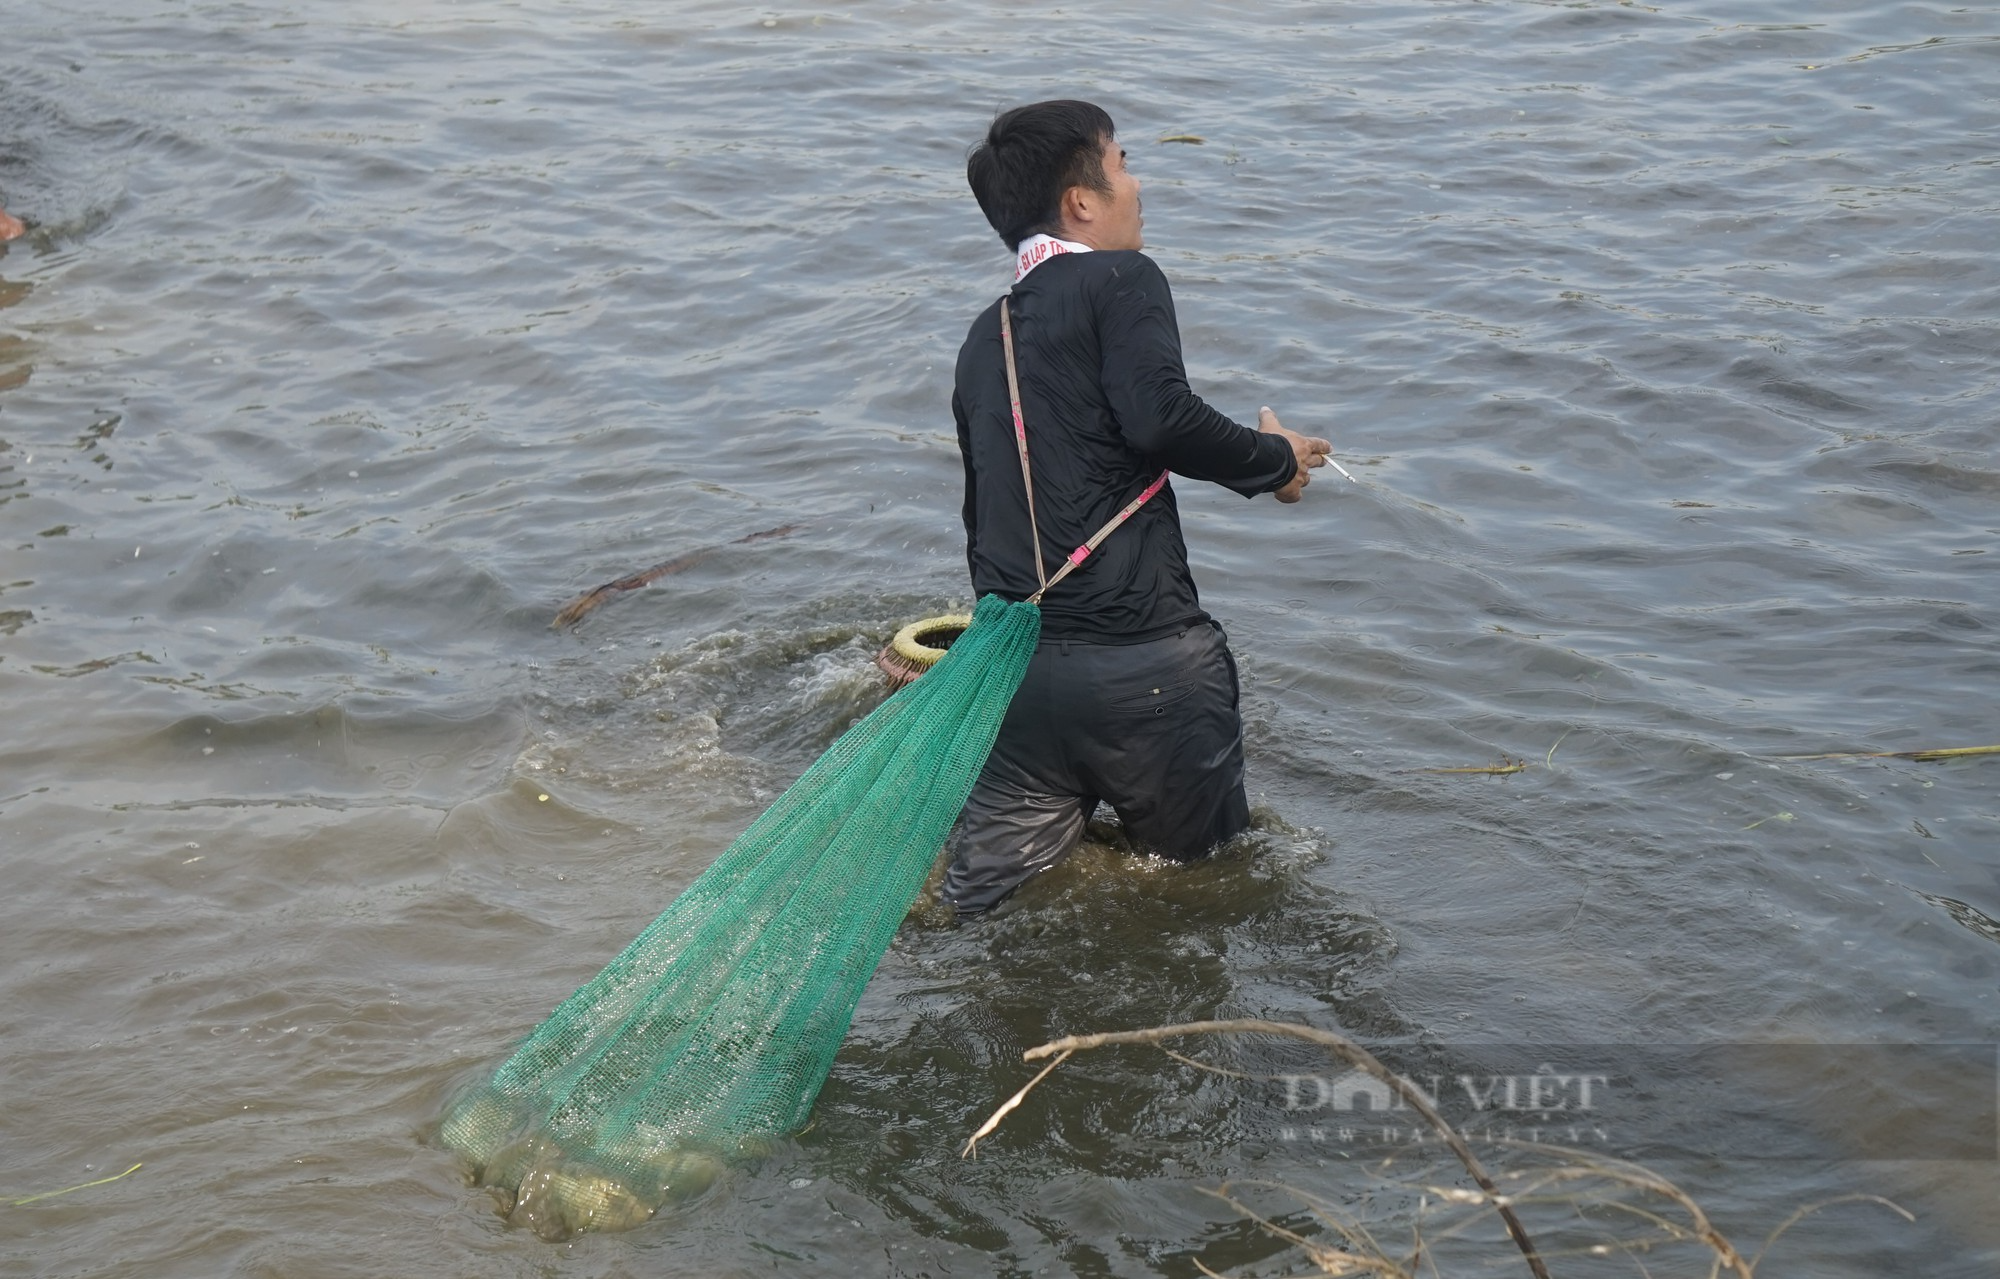 Sau một hồi trống lớn, hơn 600 người ào xuống bàu Mực ở Nghệ An trổ tài đánh cá bằng nơm - Ảnh 7.